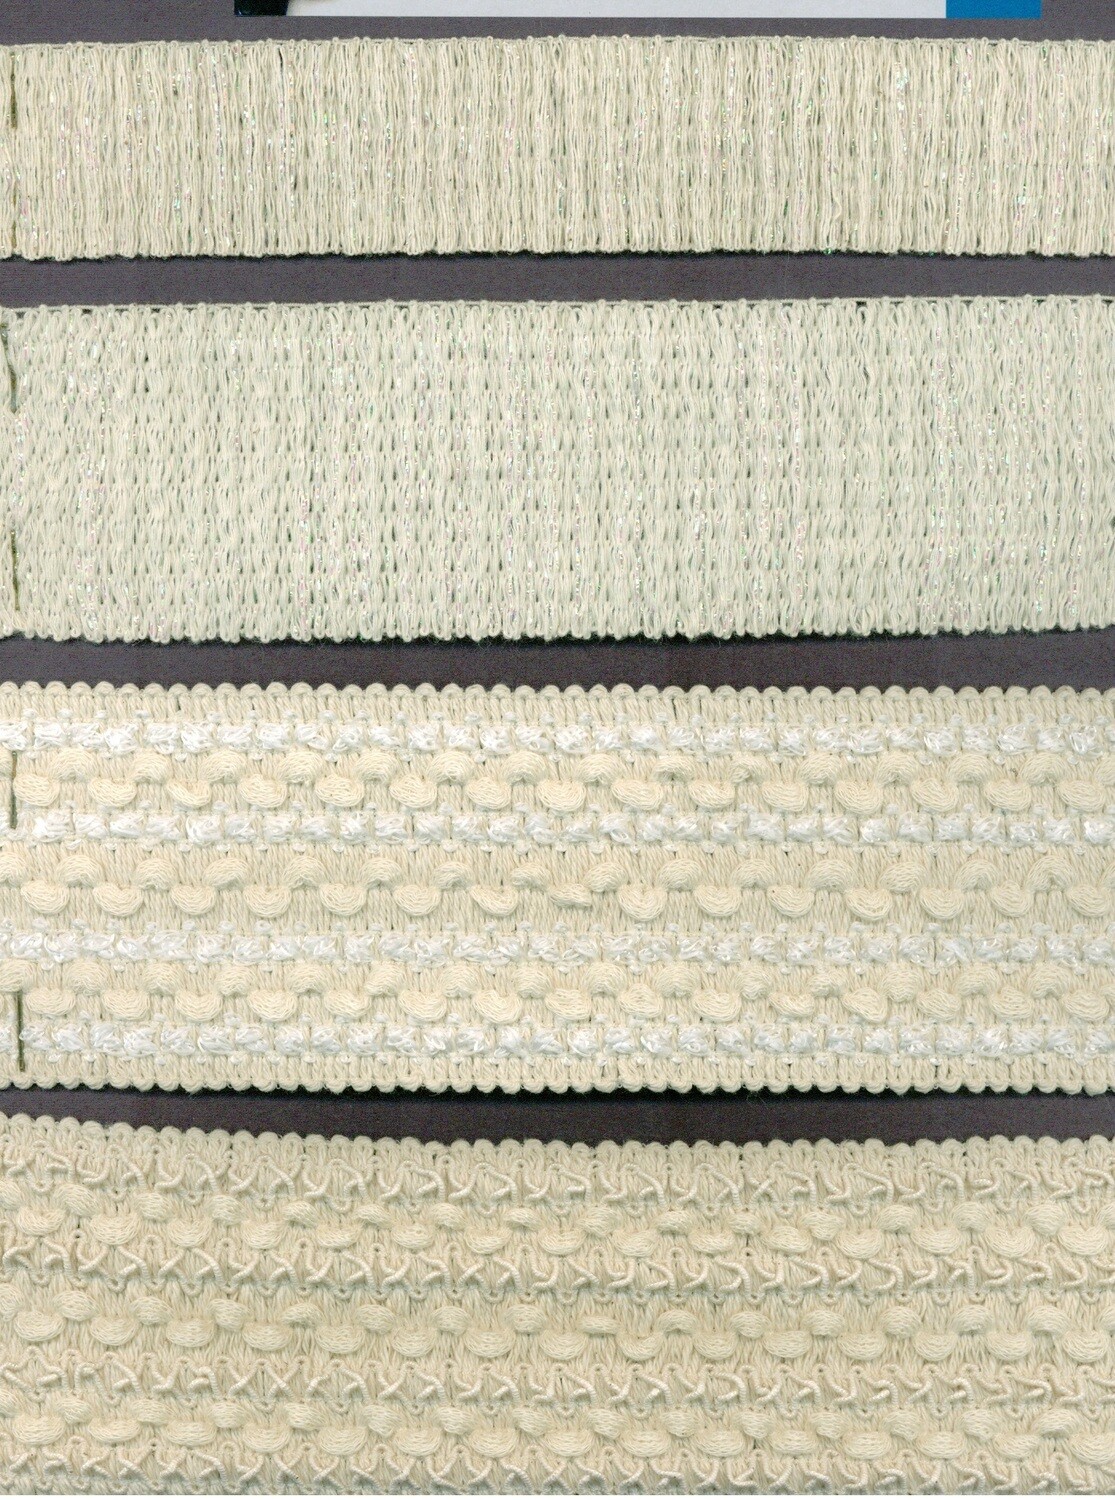 08 - Esempi di nastri elastici lavorati con base in cotone